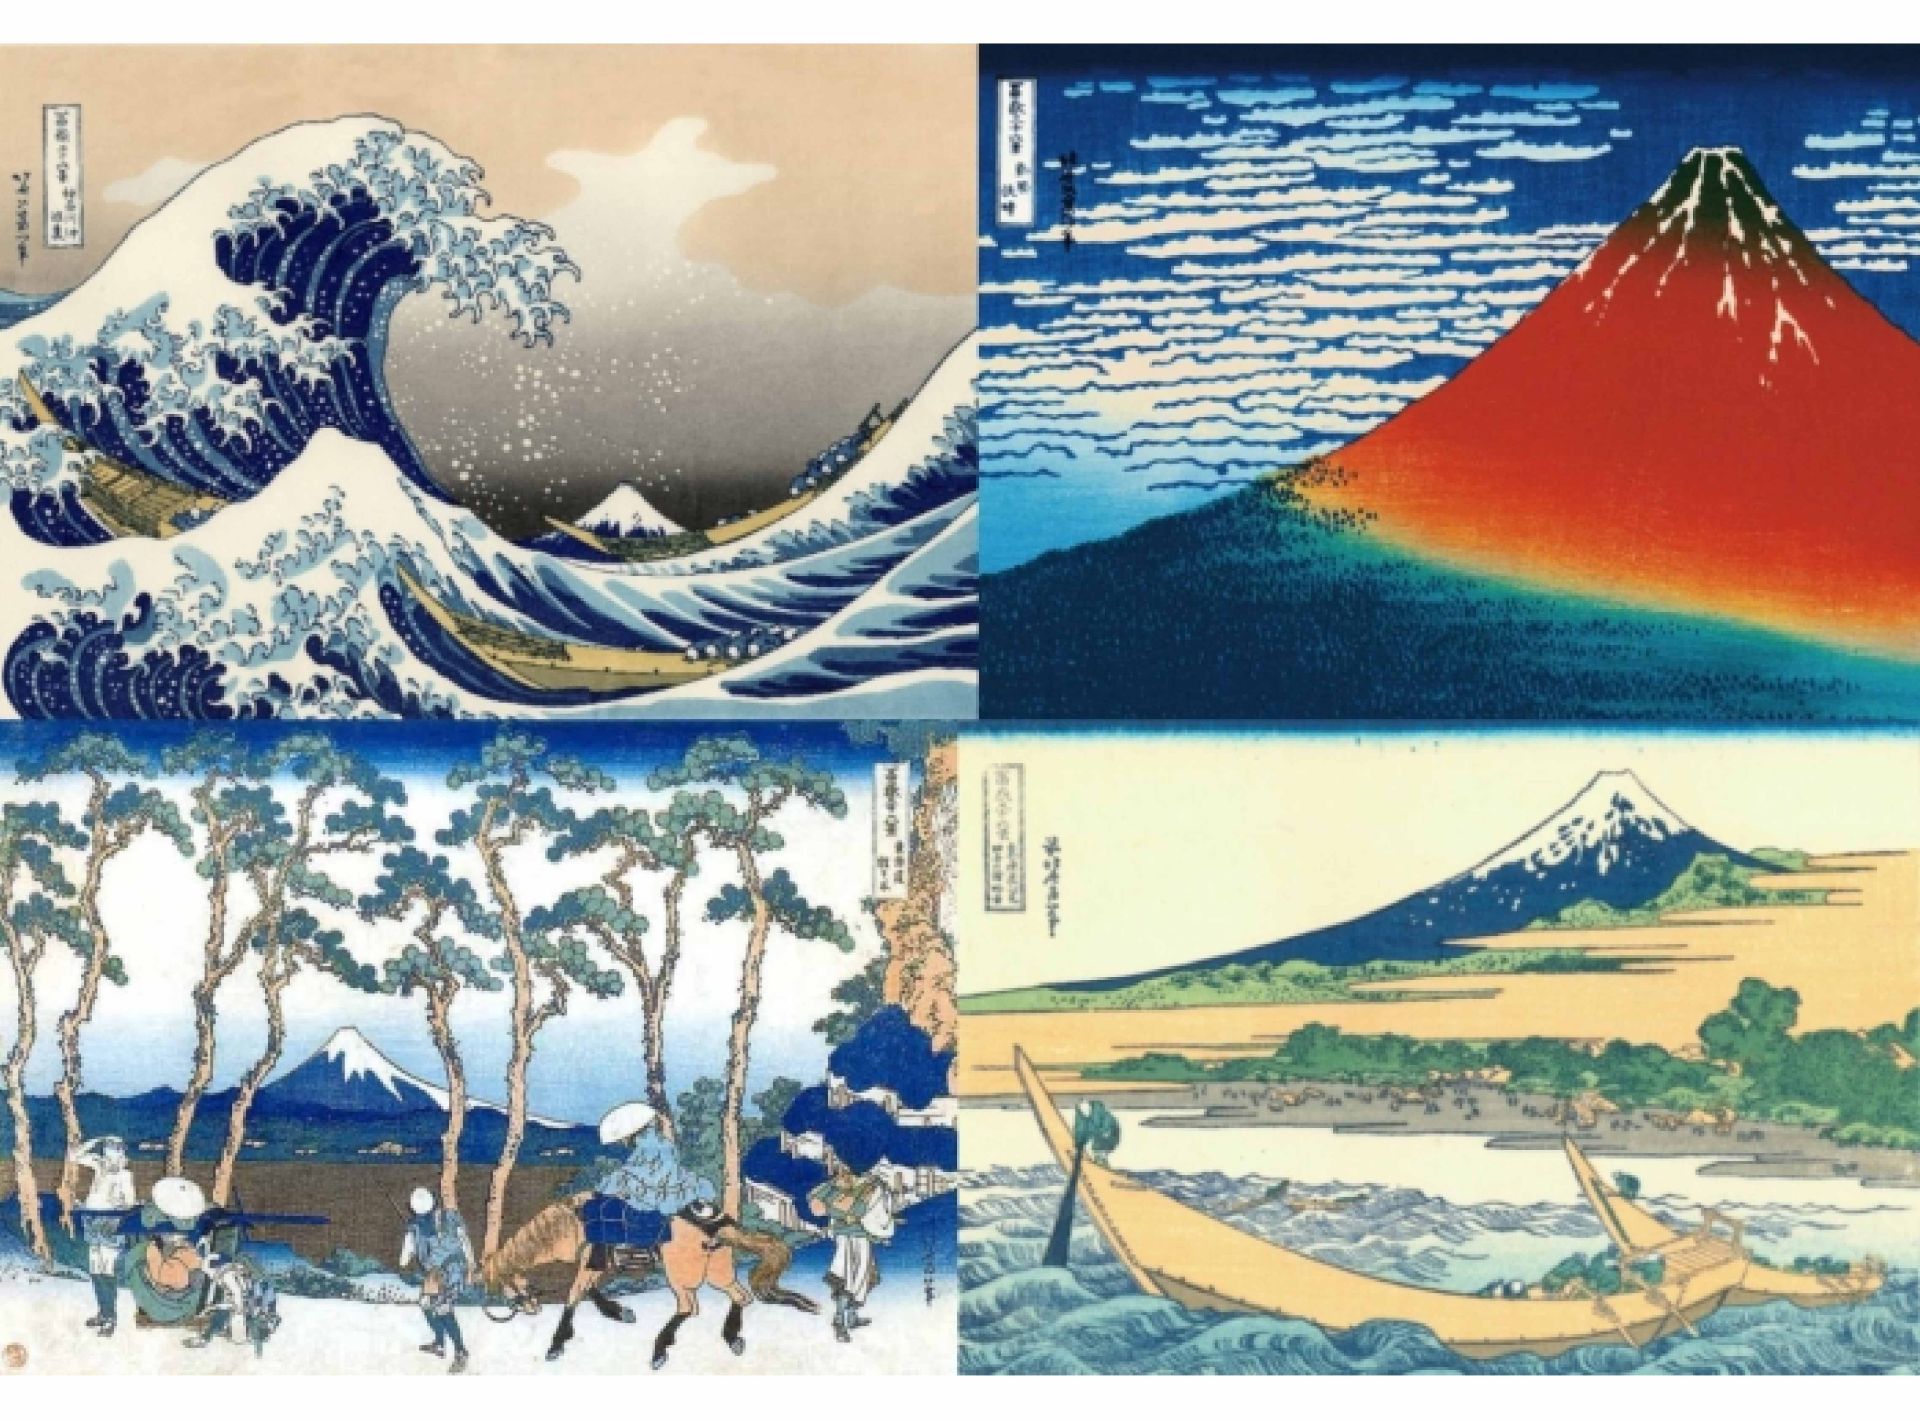 Hiện tại, ngọn núi “Phú Sĩ mới” được cho là hình thành trên đỉnh núi “Phú Sĩ cổ” vào
khoảng 10.000 năm trước. Ngọn Phú Sĩ mới này xảy ra nhiều lần phun trào dung nham
vào các giai đoạn khác nhau, lần gần đây nhất là vào năm 1707 vào thời kỳ Edo. Mỗi lần
núi lửa phun trào lại tạo nên các dung nham xếp chồng lên nhau, qua thời gian Phú Sĩ có
chiều cao như hiện tại và cấu trúc hình nón úp đặc biệt cân xứng. Hiện tại, trên đỉnh Phú
Sĩ miệng núi lửa vẫn còn hoạt động nhưng nguy cơ phun dung nham thấp, chỉ có hiện
tượng phụt hơi nóng. Miệng núi lửa này có đường kính 780m và sâu 240m. Điều này cũng
làm nên điểm đặc biệt của Phú Sĩ: đỉnh núi quanh năm tuyết phủ trắng xóa nhưng chính
giữa vẫn có miệng núi lửa phun hơi khói nóng.